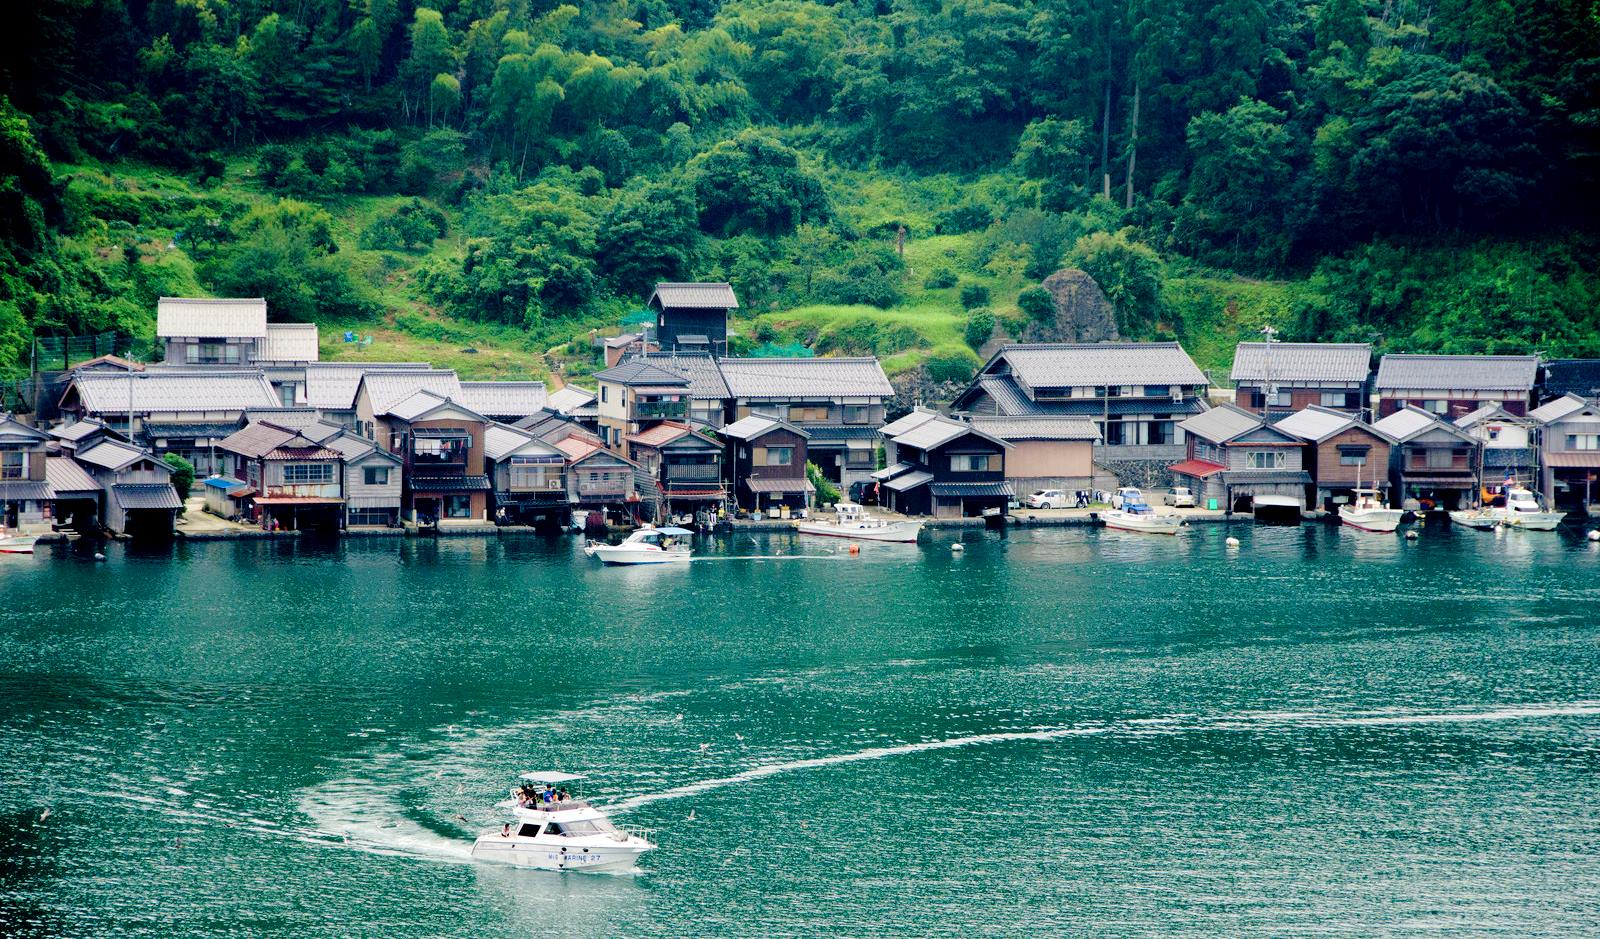 Giống như các funayas khác, tầng một ban đầu được dùng làm “ga ra” để chứa thuyền. Bây giờ, Nagahama Hidetoshi đã biến nó thành phòng chờ cho khách. Ý tưởng của nhà khách này giống như “cuộc sống hàng ngày trong một không gian khác”,  để những người từ thành phố quên đi sự hối hả và nhộn nhịp của cuộc sống hàng ngày và hòa mình vào bầu không khí thư giãn của thị trấn.